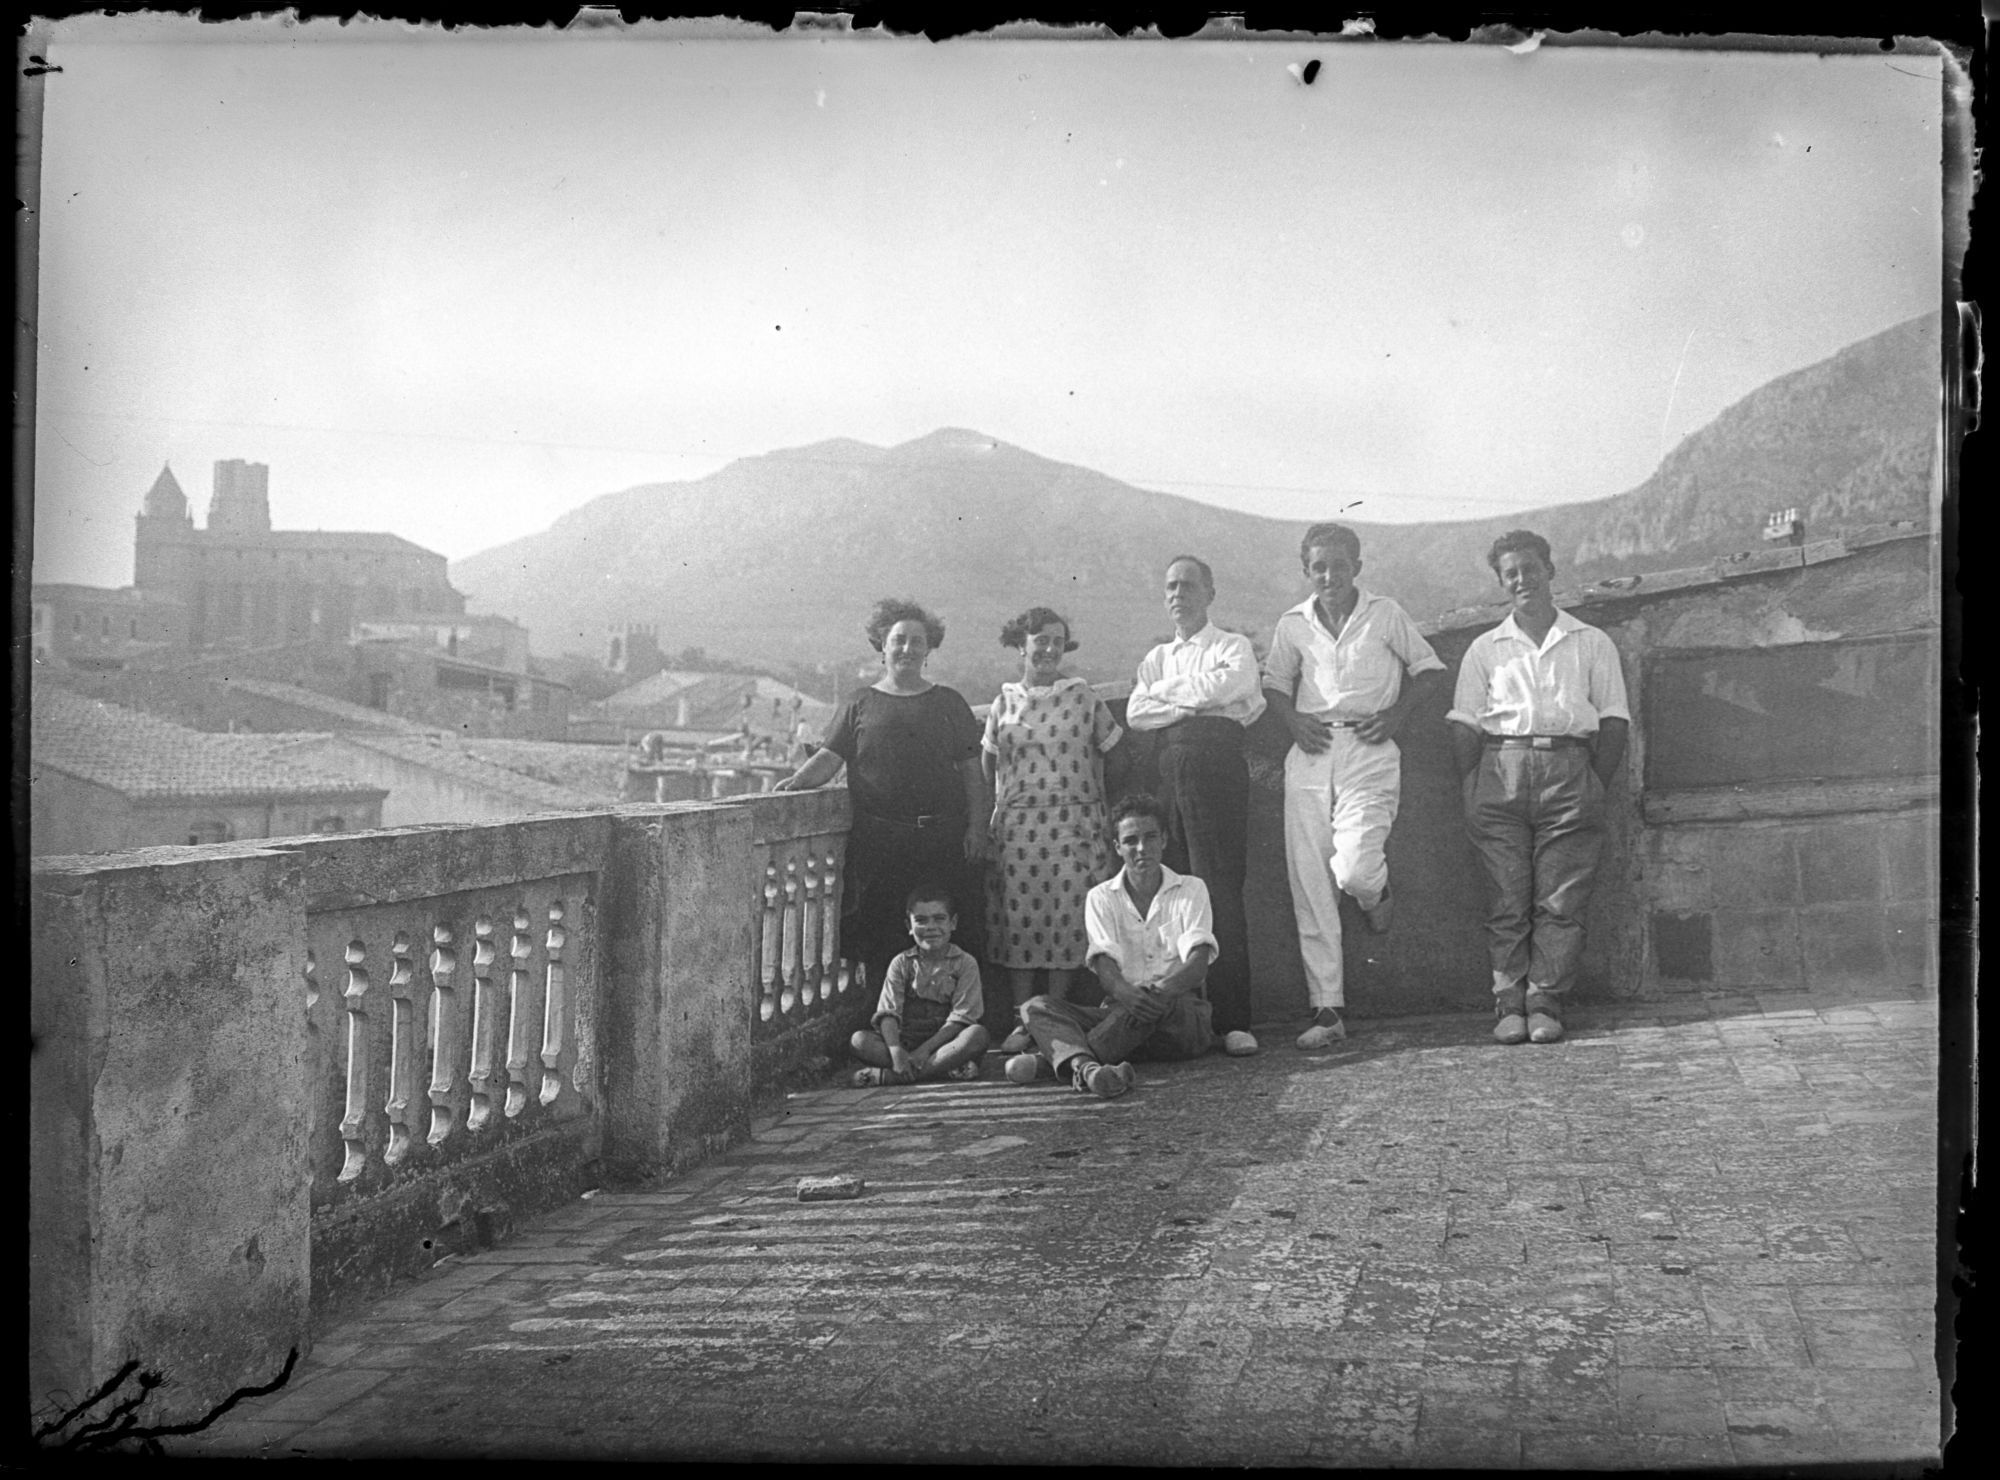 L’Arxiu Municipal de Torroella de Montgrí ingressa una còpia digitalitzada del fons fotogràfic Lluís Pericot